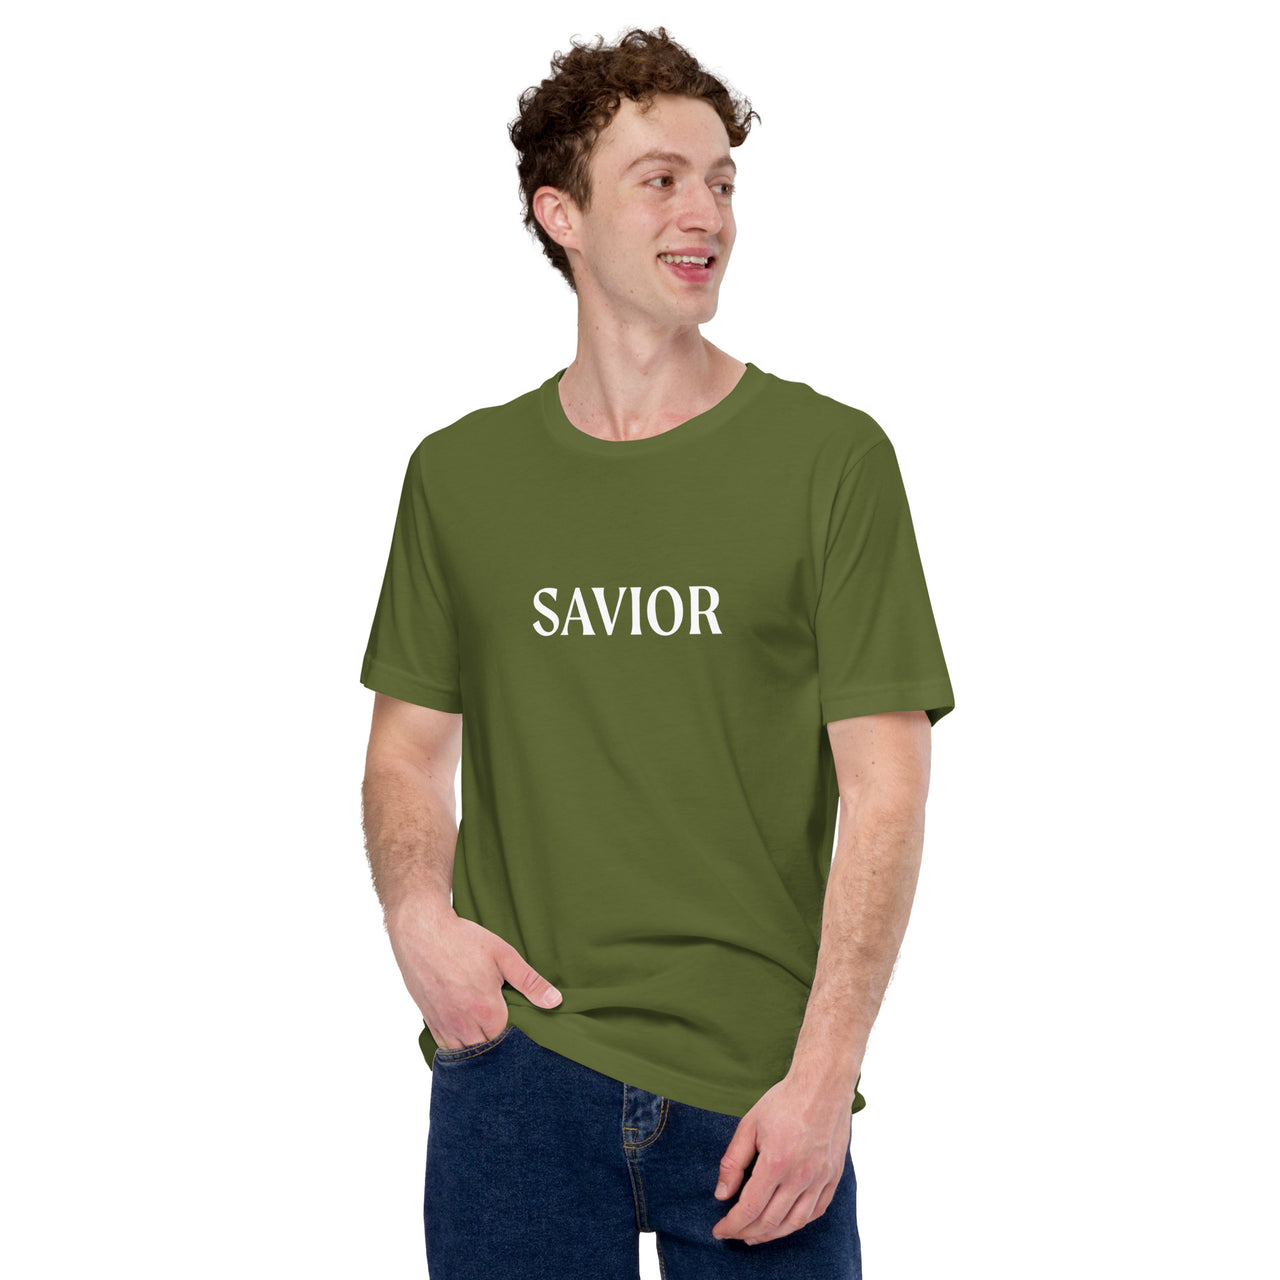 Mark Savior "Savior23" Tee